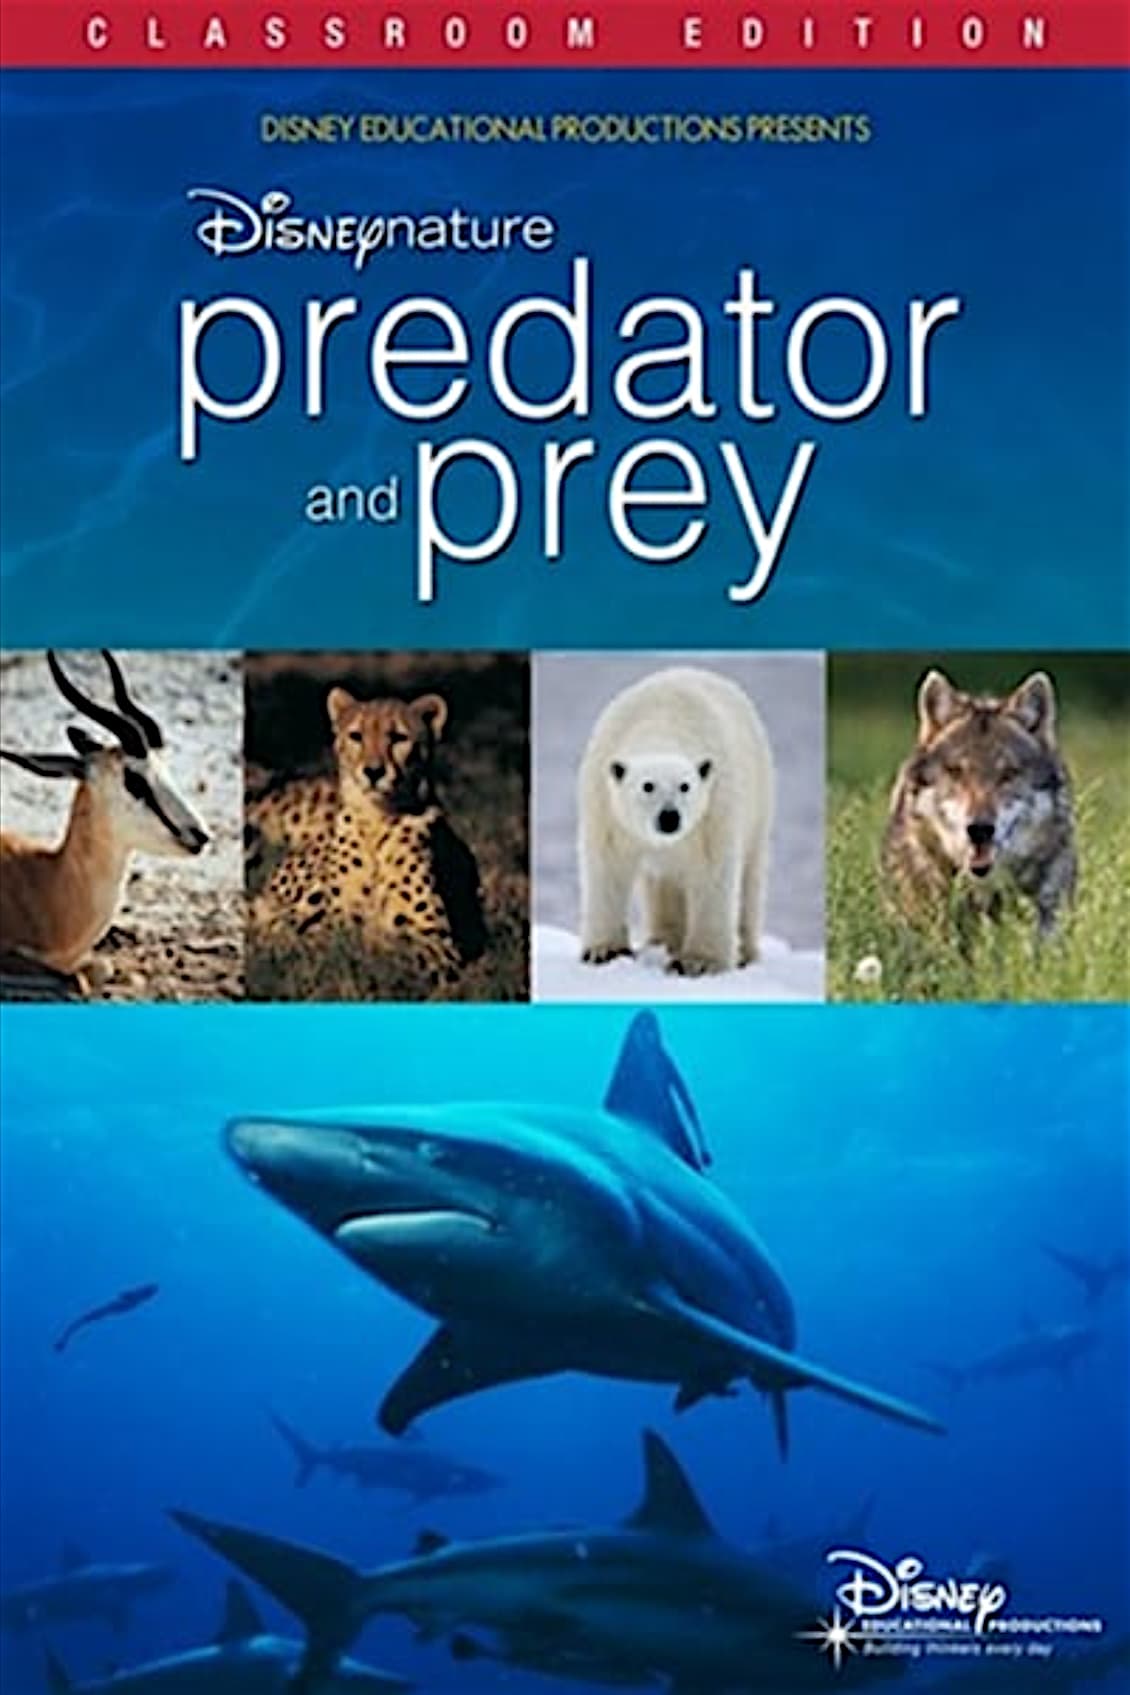 Disneynature: Predator and Prey